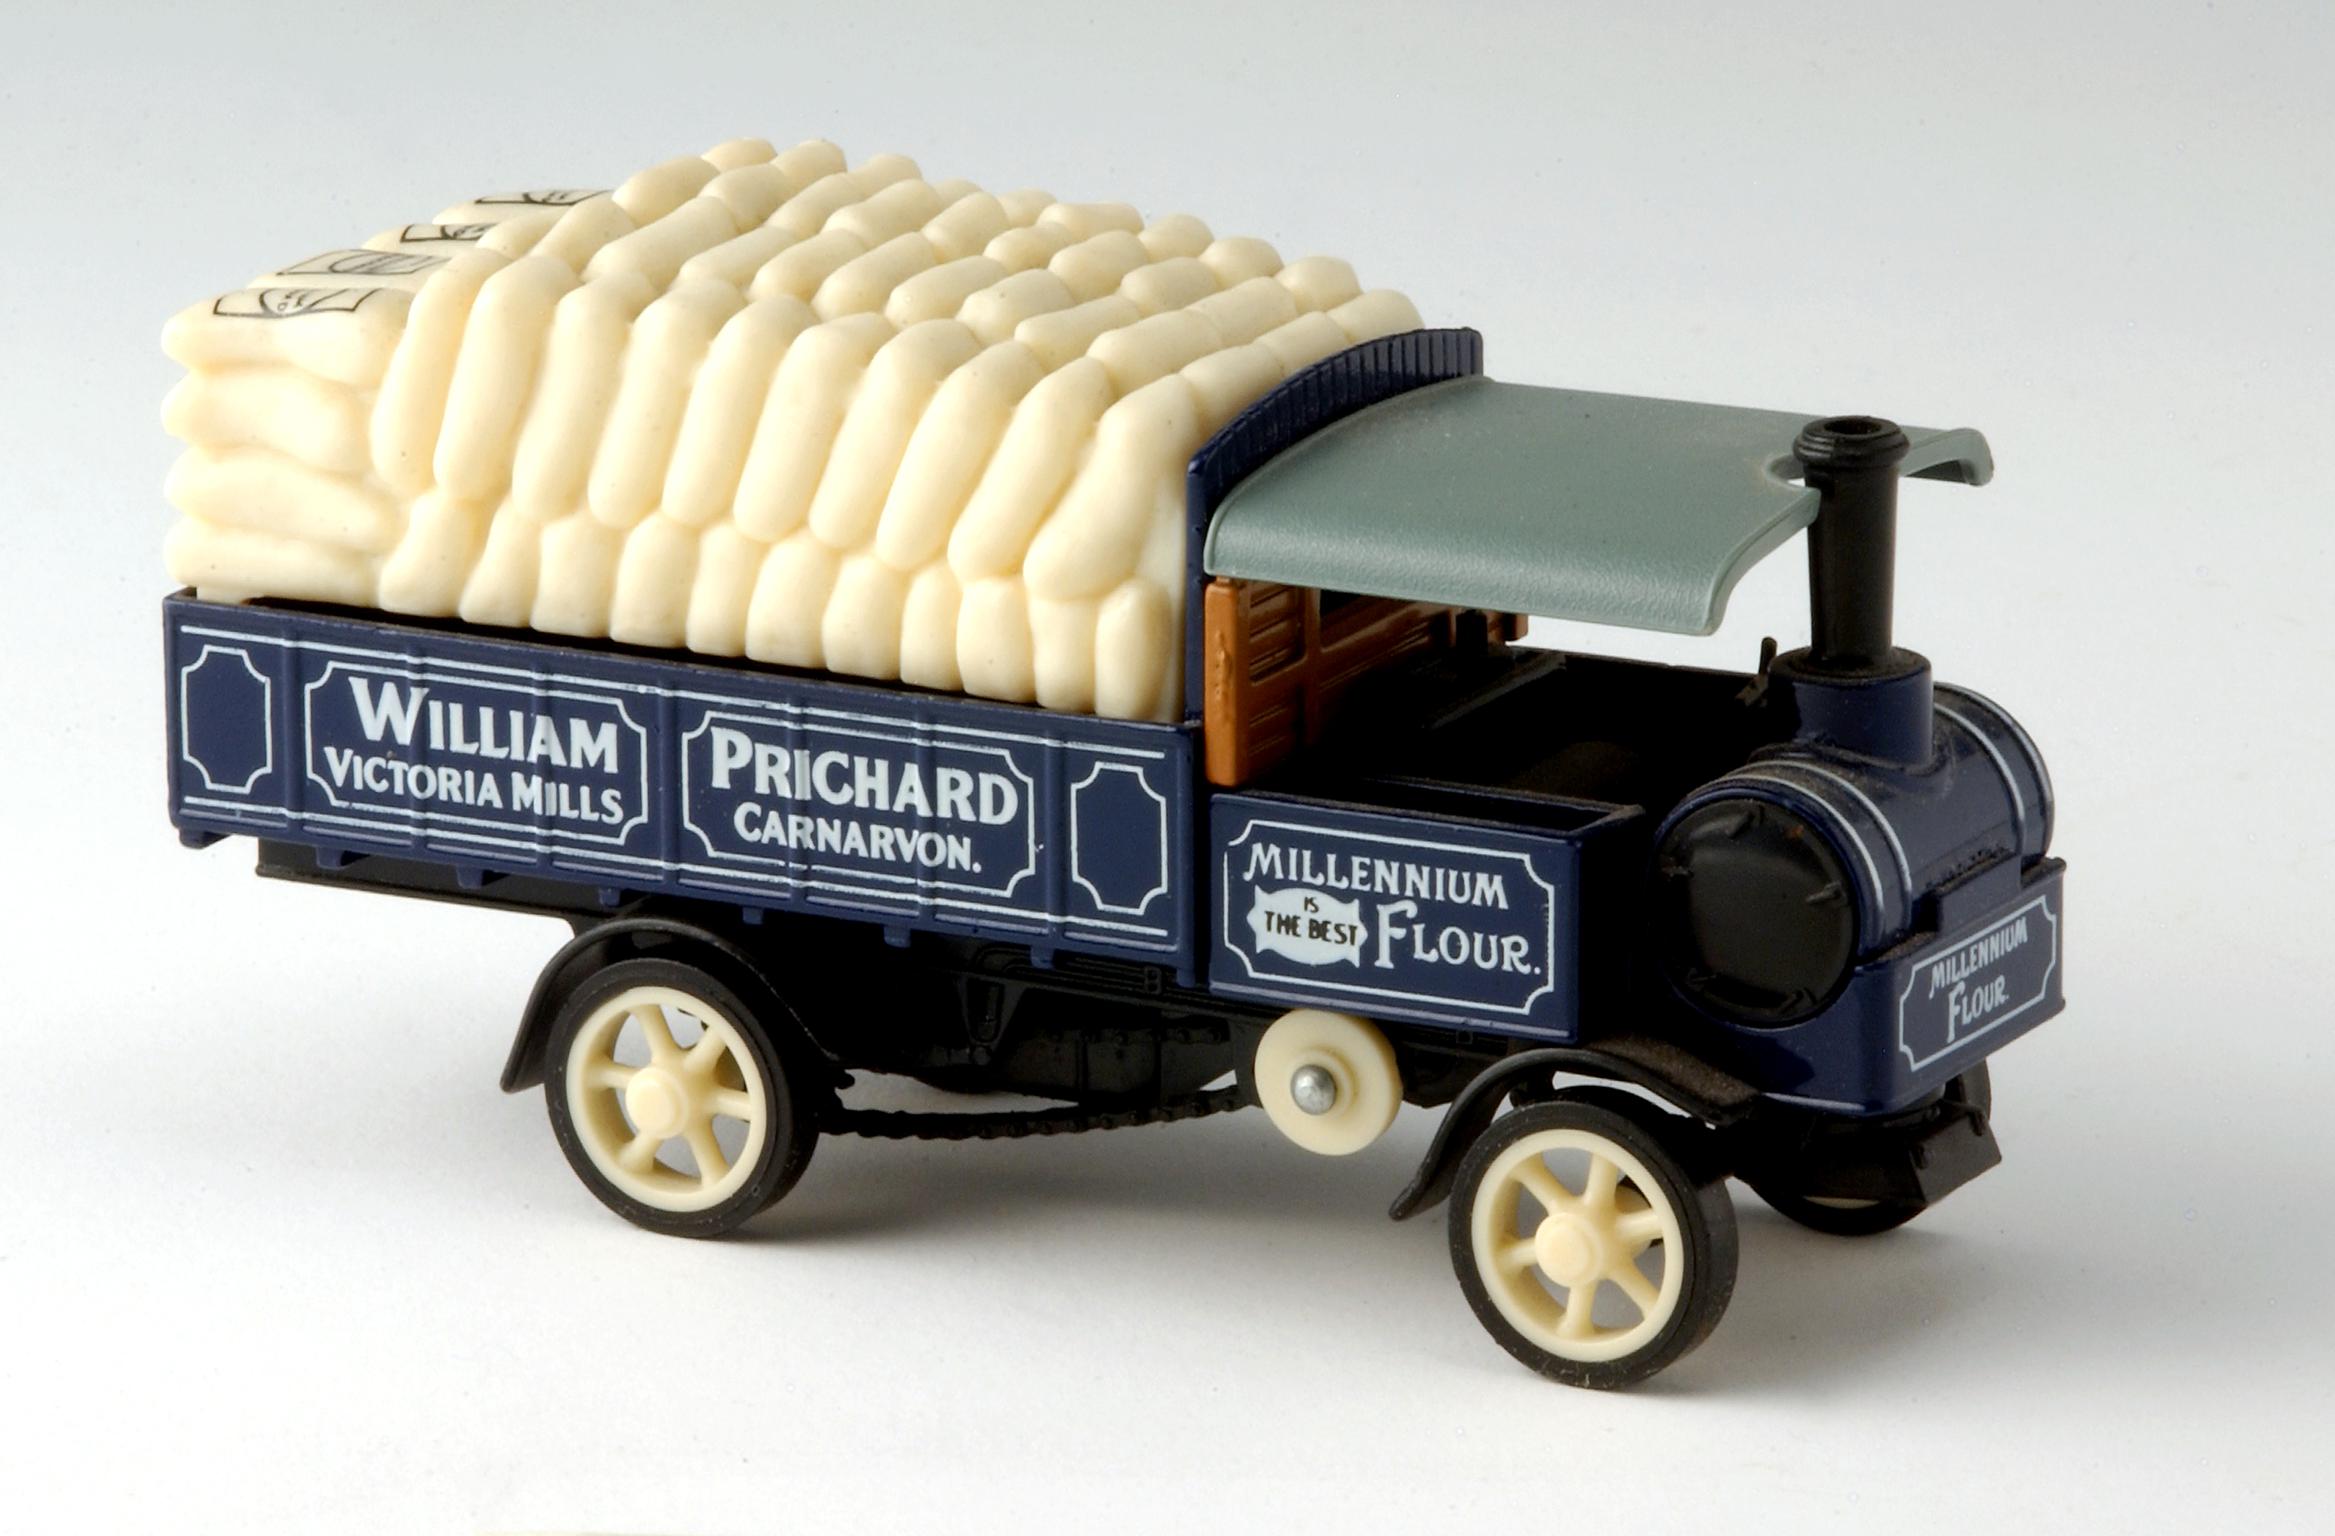 William Pritchard, Carnarvon, steam wagon model